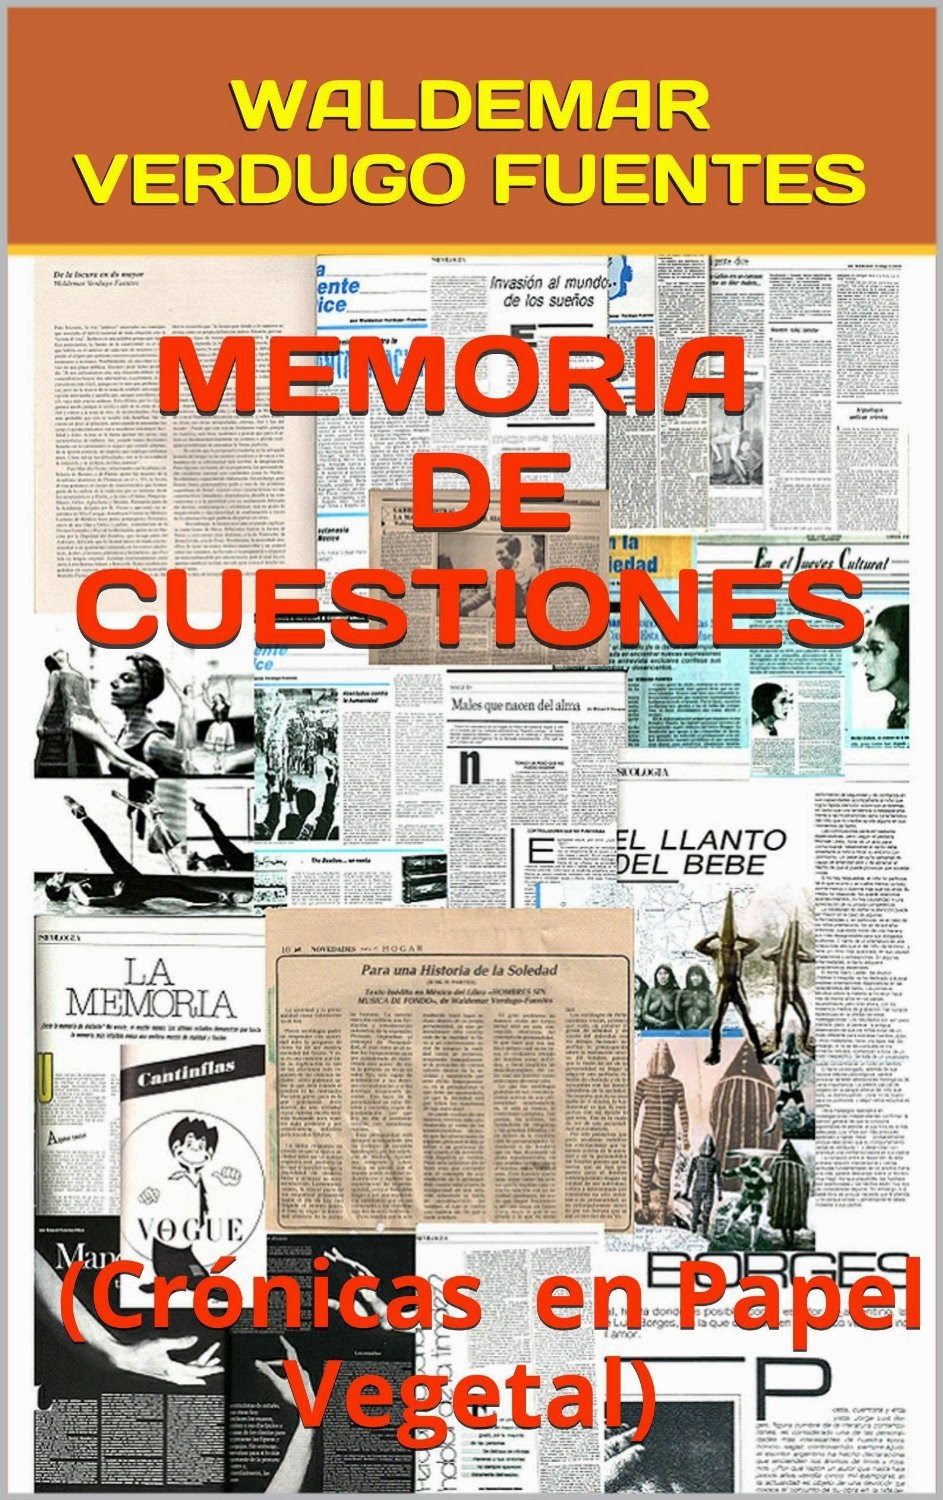 MEMORIA DE CUESTIONES